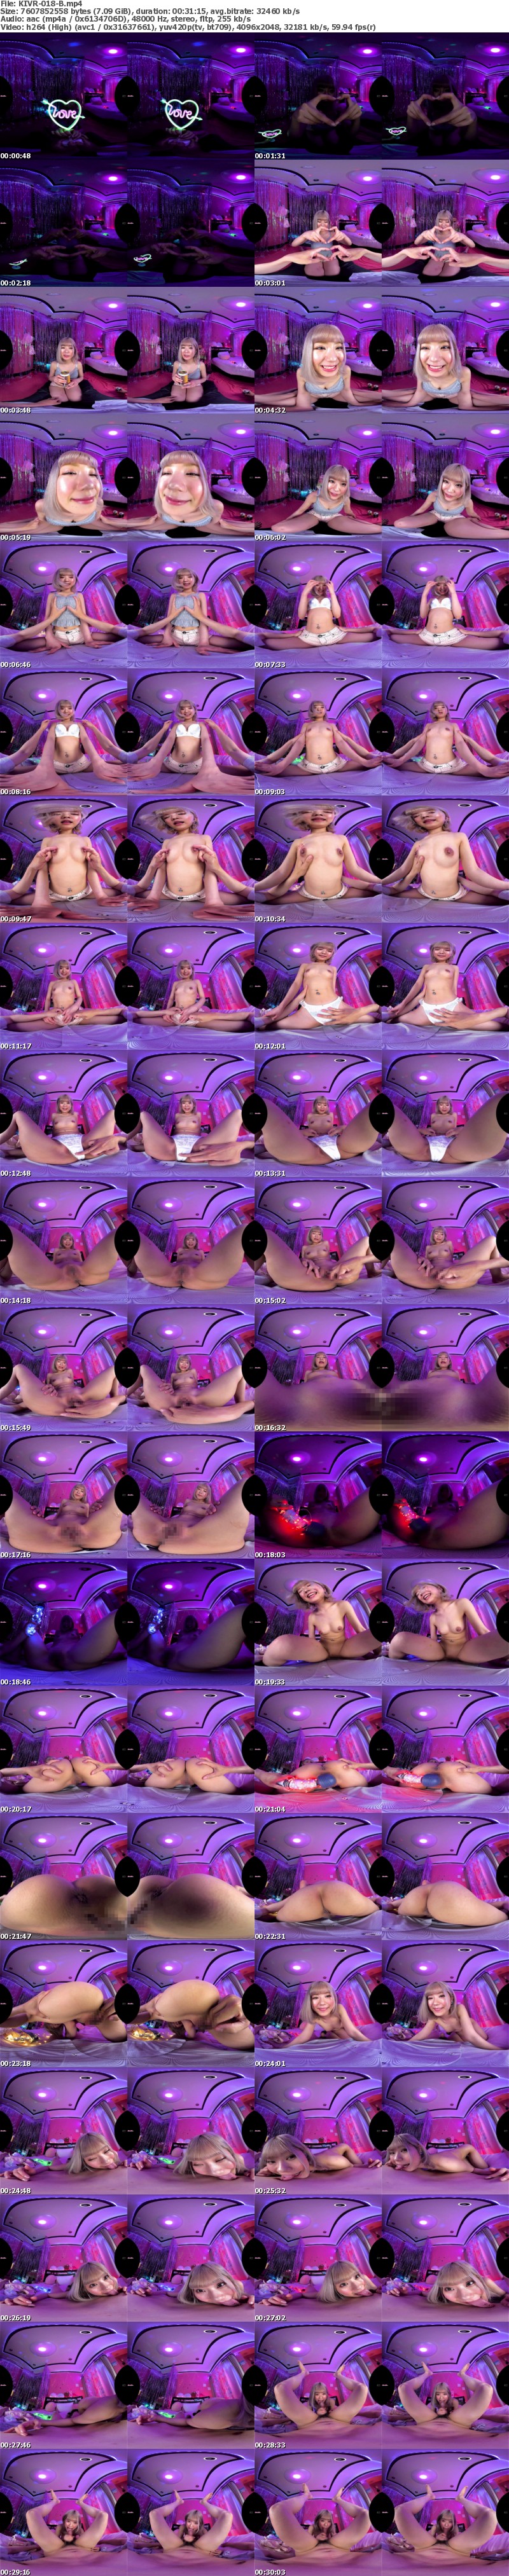 (VR) KIVR-018 HYPER LEDでアゲアゲSEX！ VR史上最ルーメン（光量）！ピッカピカ空間でギャルとアッツアツイチャラブSEX！！ るるちゃ。